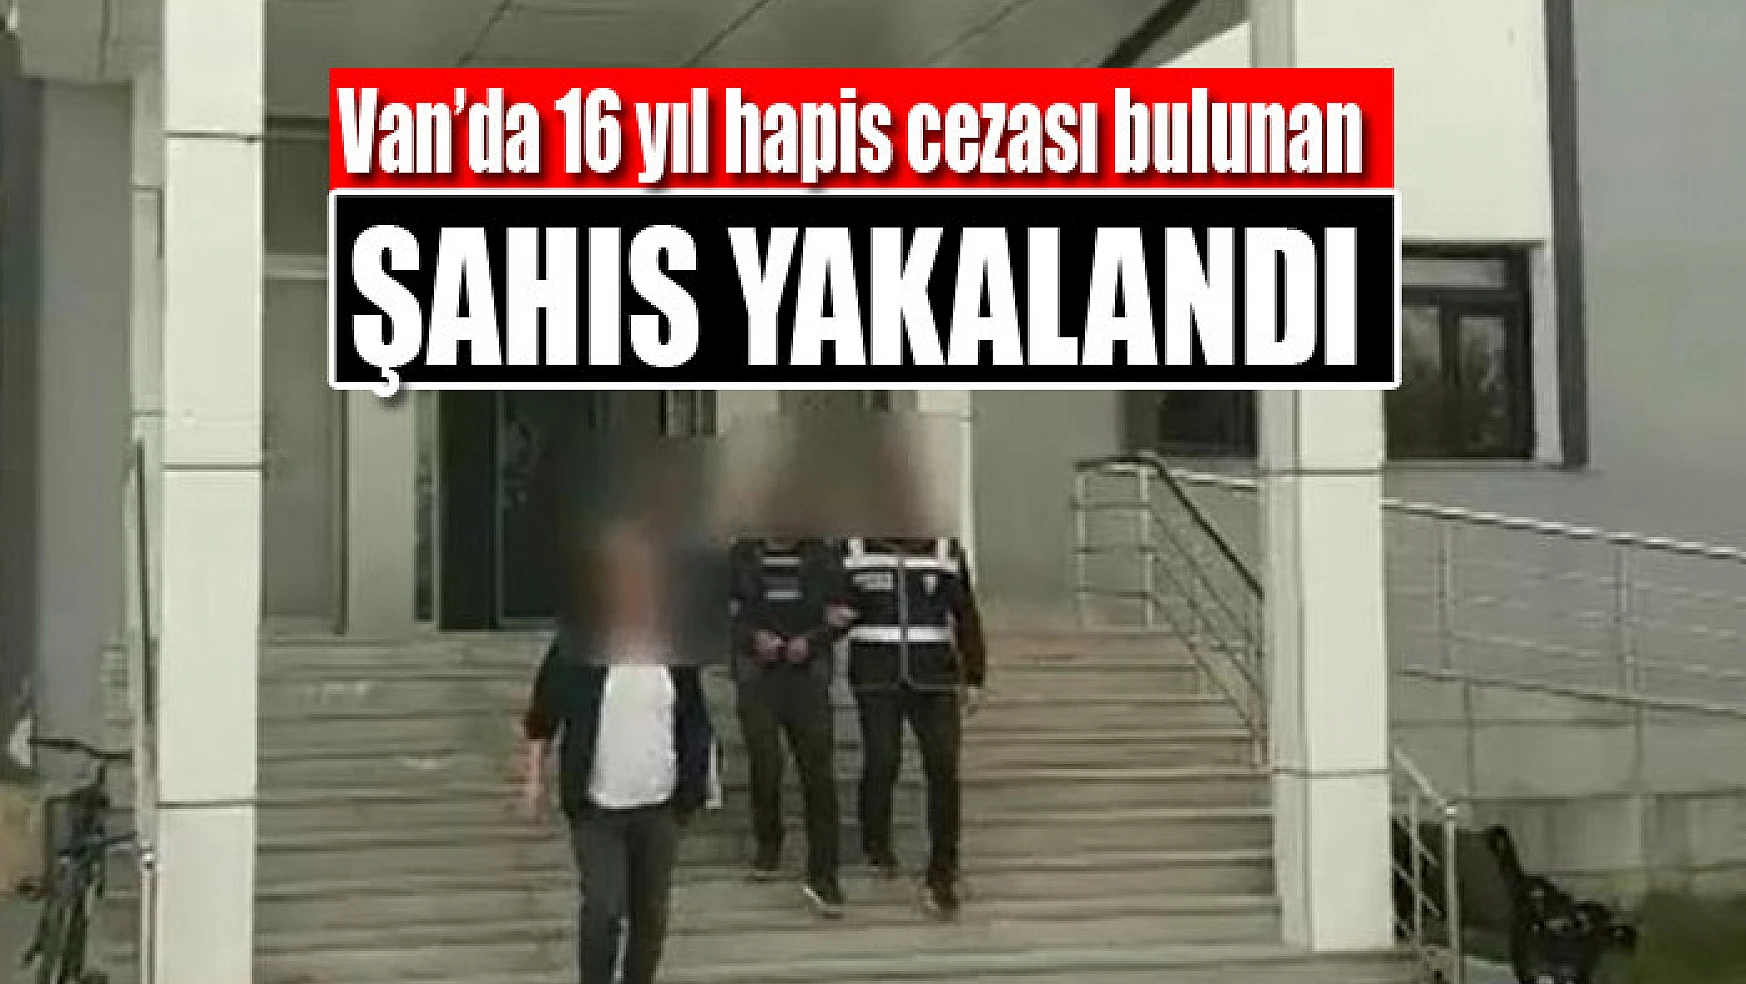 Van'da 16 yıl hapis cezası bulunan şahıs yakalandı